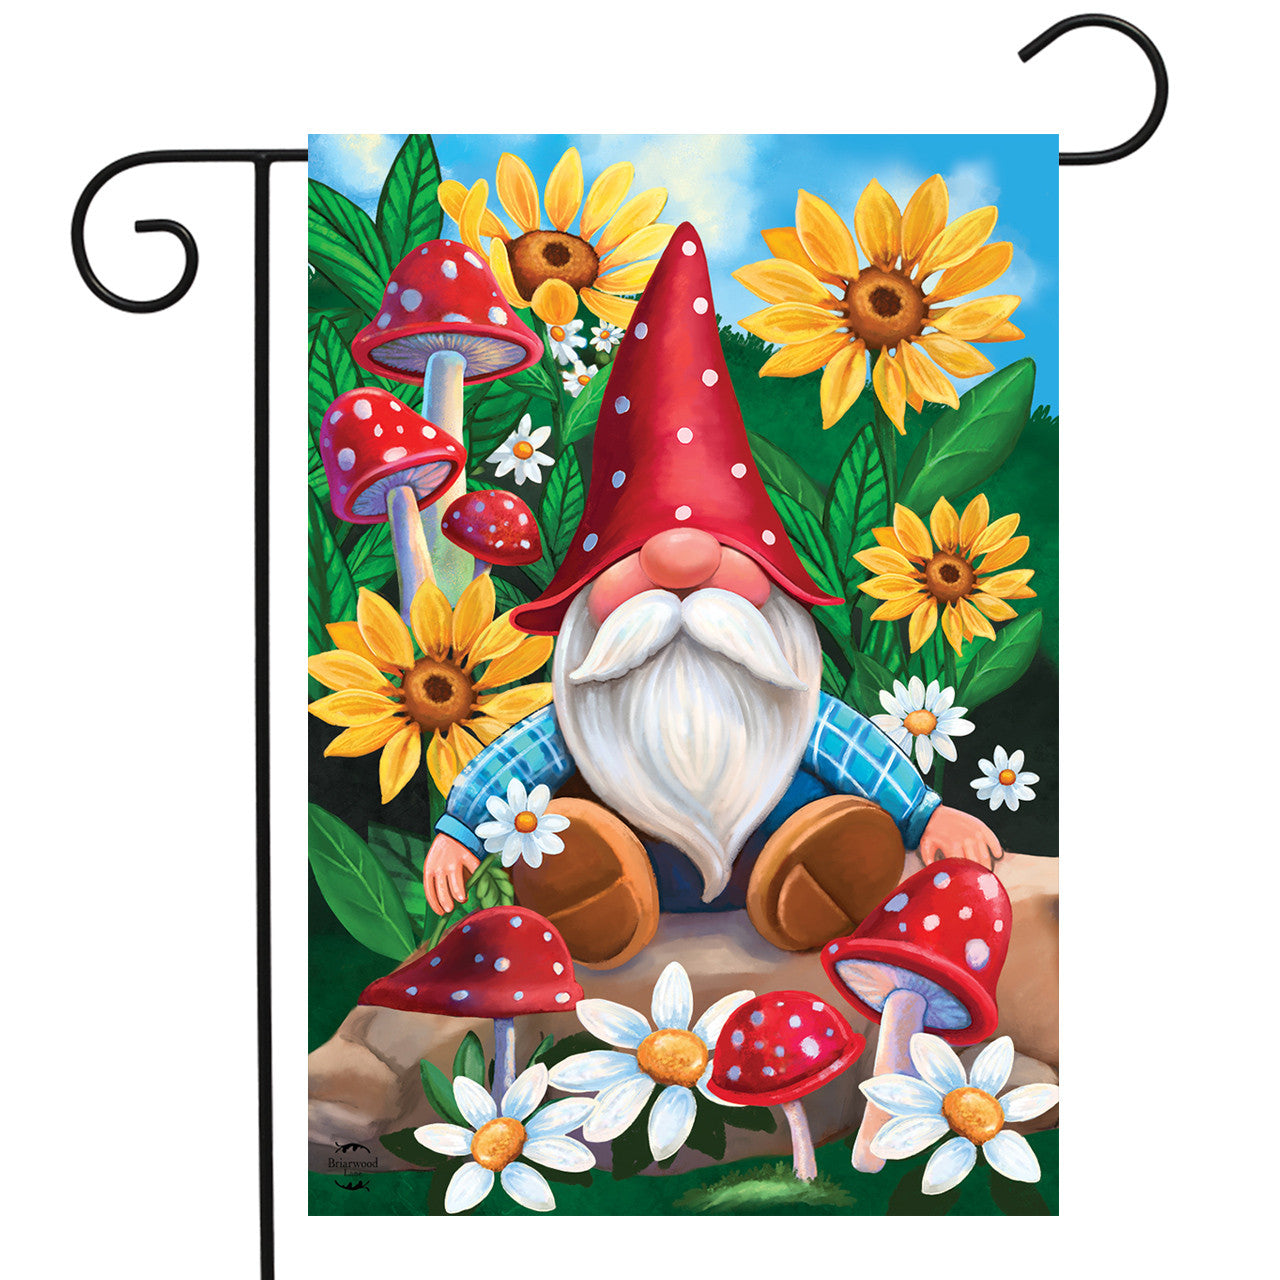 "Gnome and Garden" Garden Flag